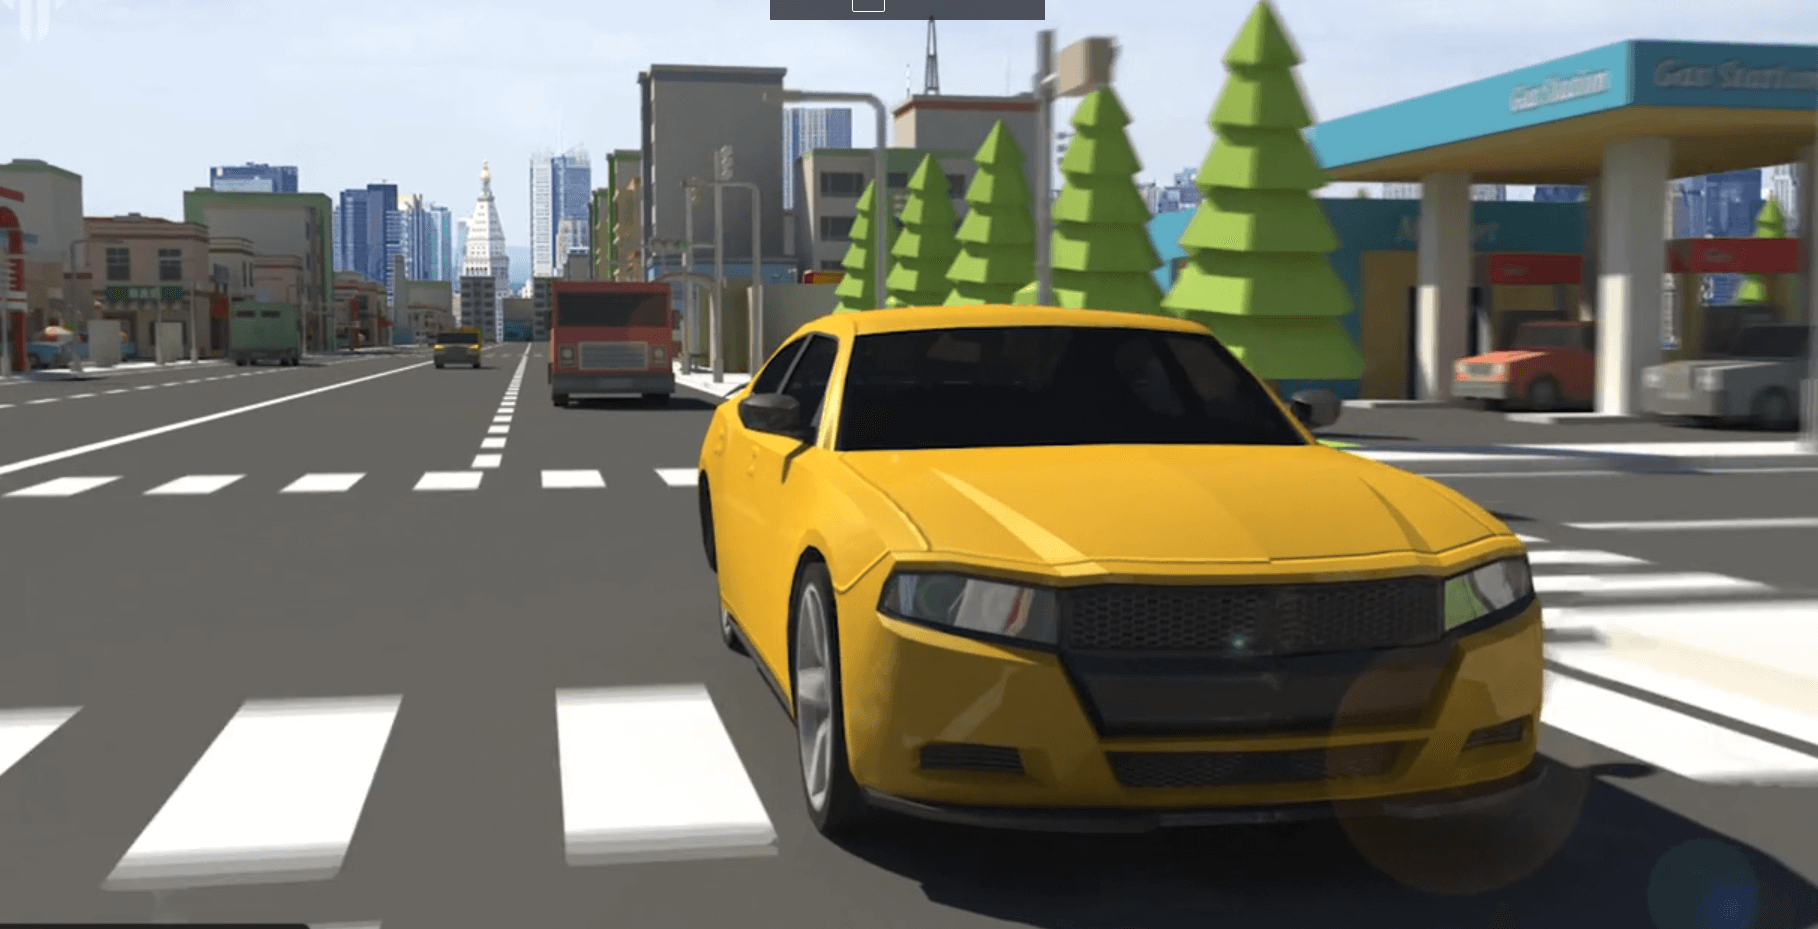 Traffic Guru - traffic awareness simulator by Tiltlabs